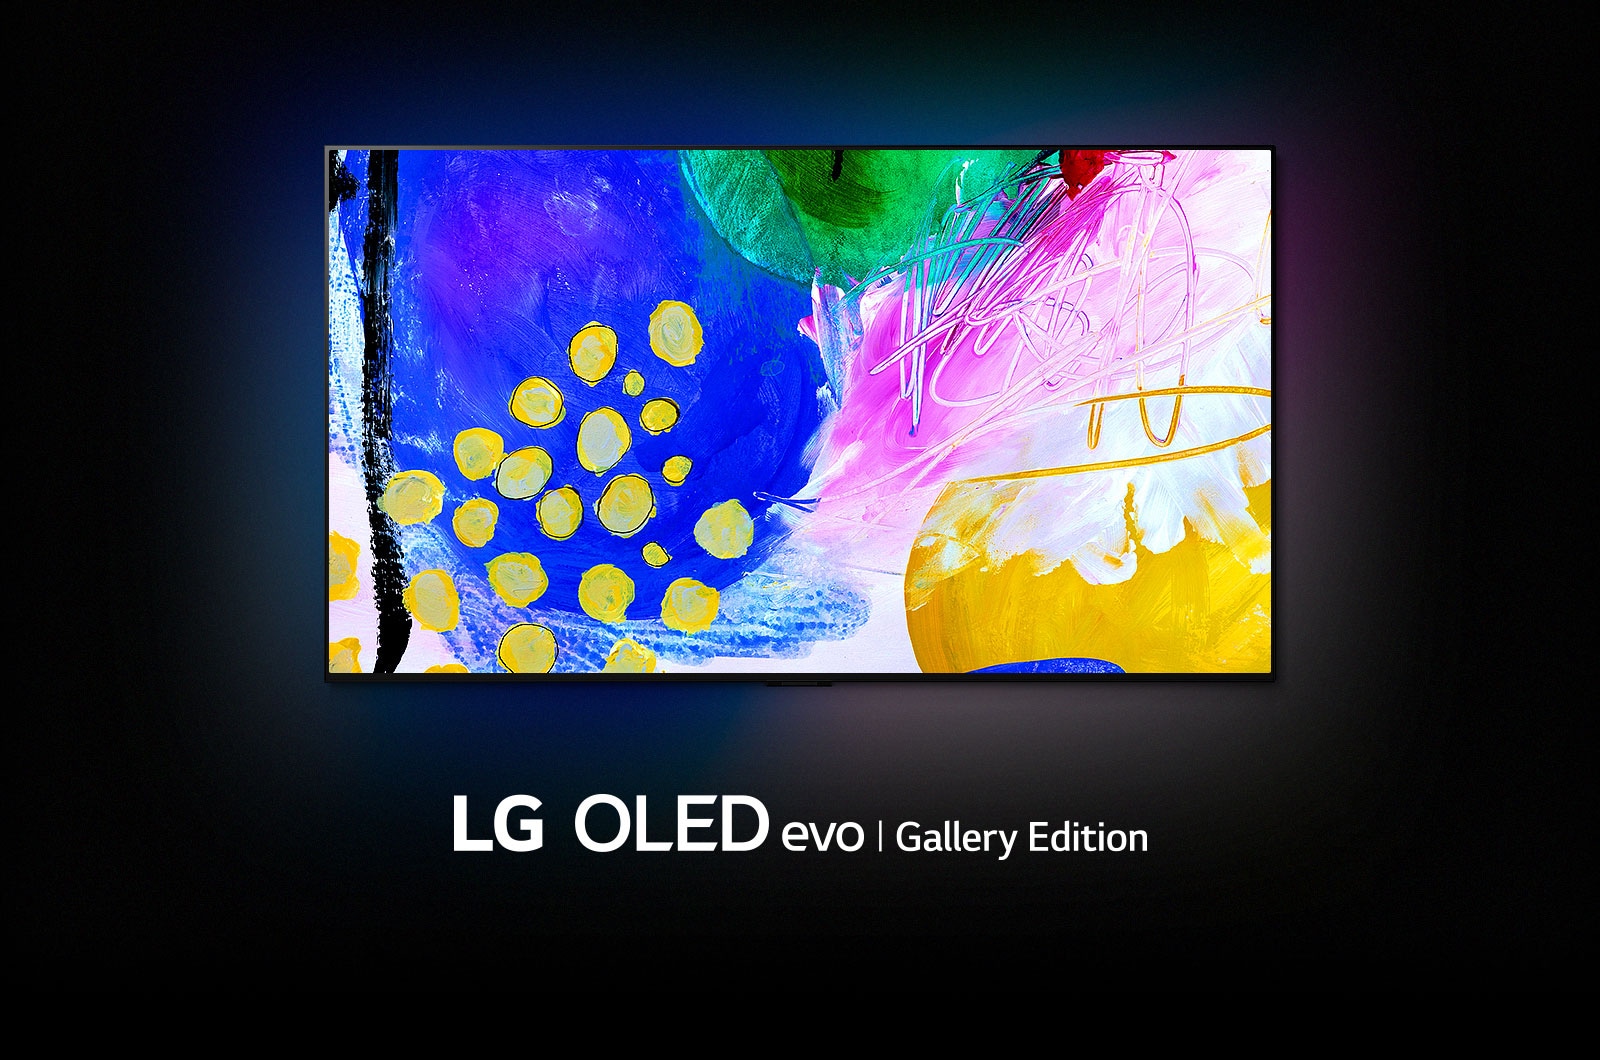 LG OLED G2 sedi v temni sobi s pisanimi abstraktnimi umetninami oblik na zaslonu in napisom »LG OLED evo Gallery Edition« pod njim.